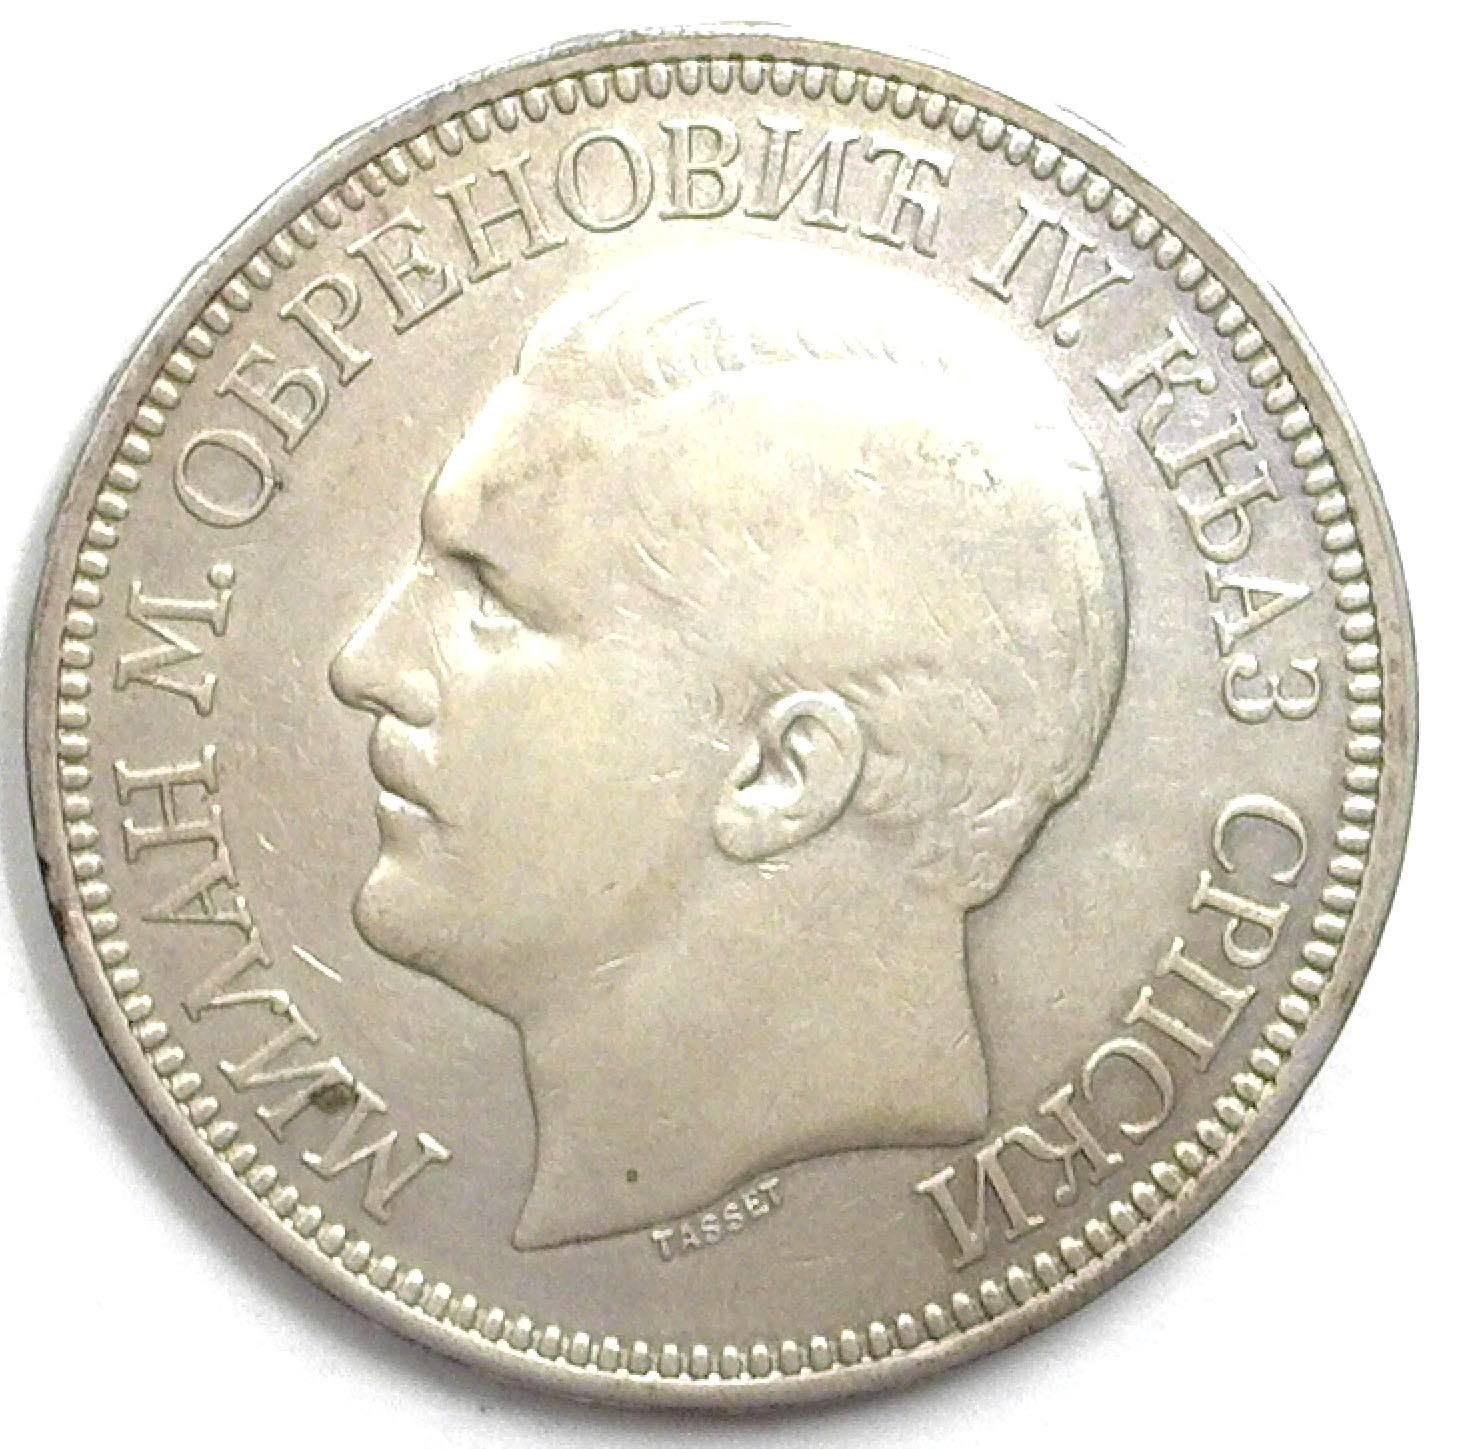 1879 5 Dinar AU Serbia